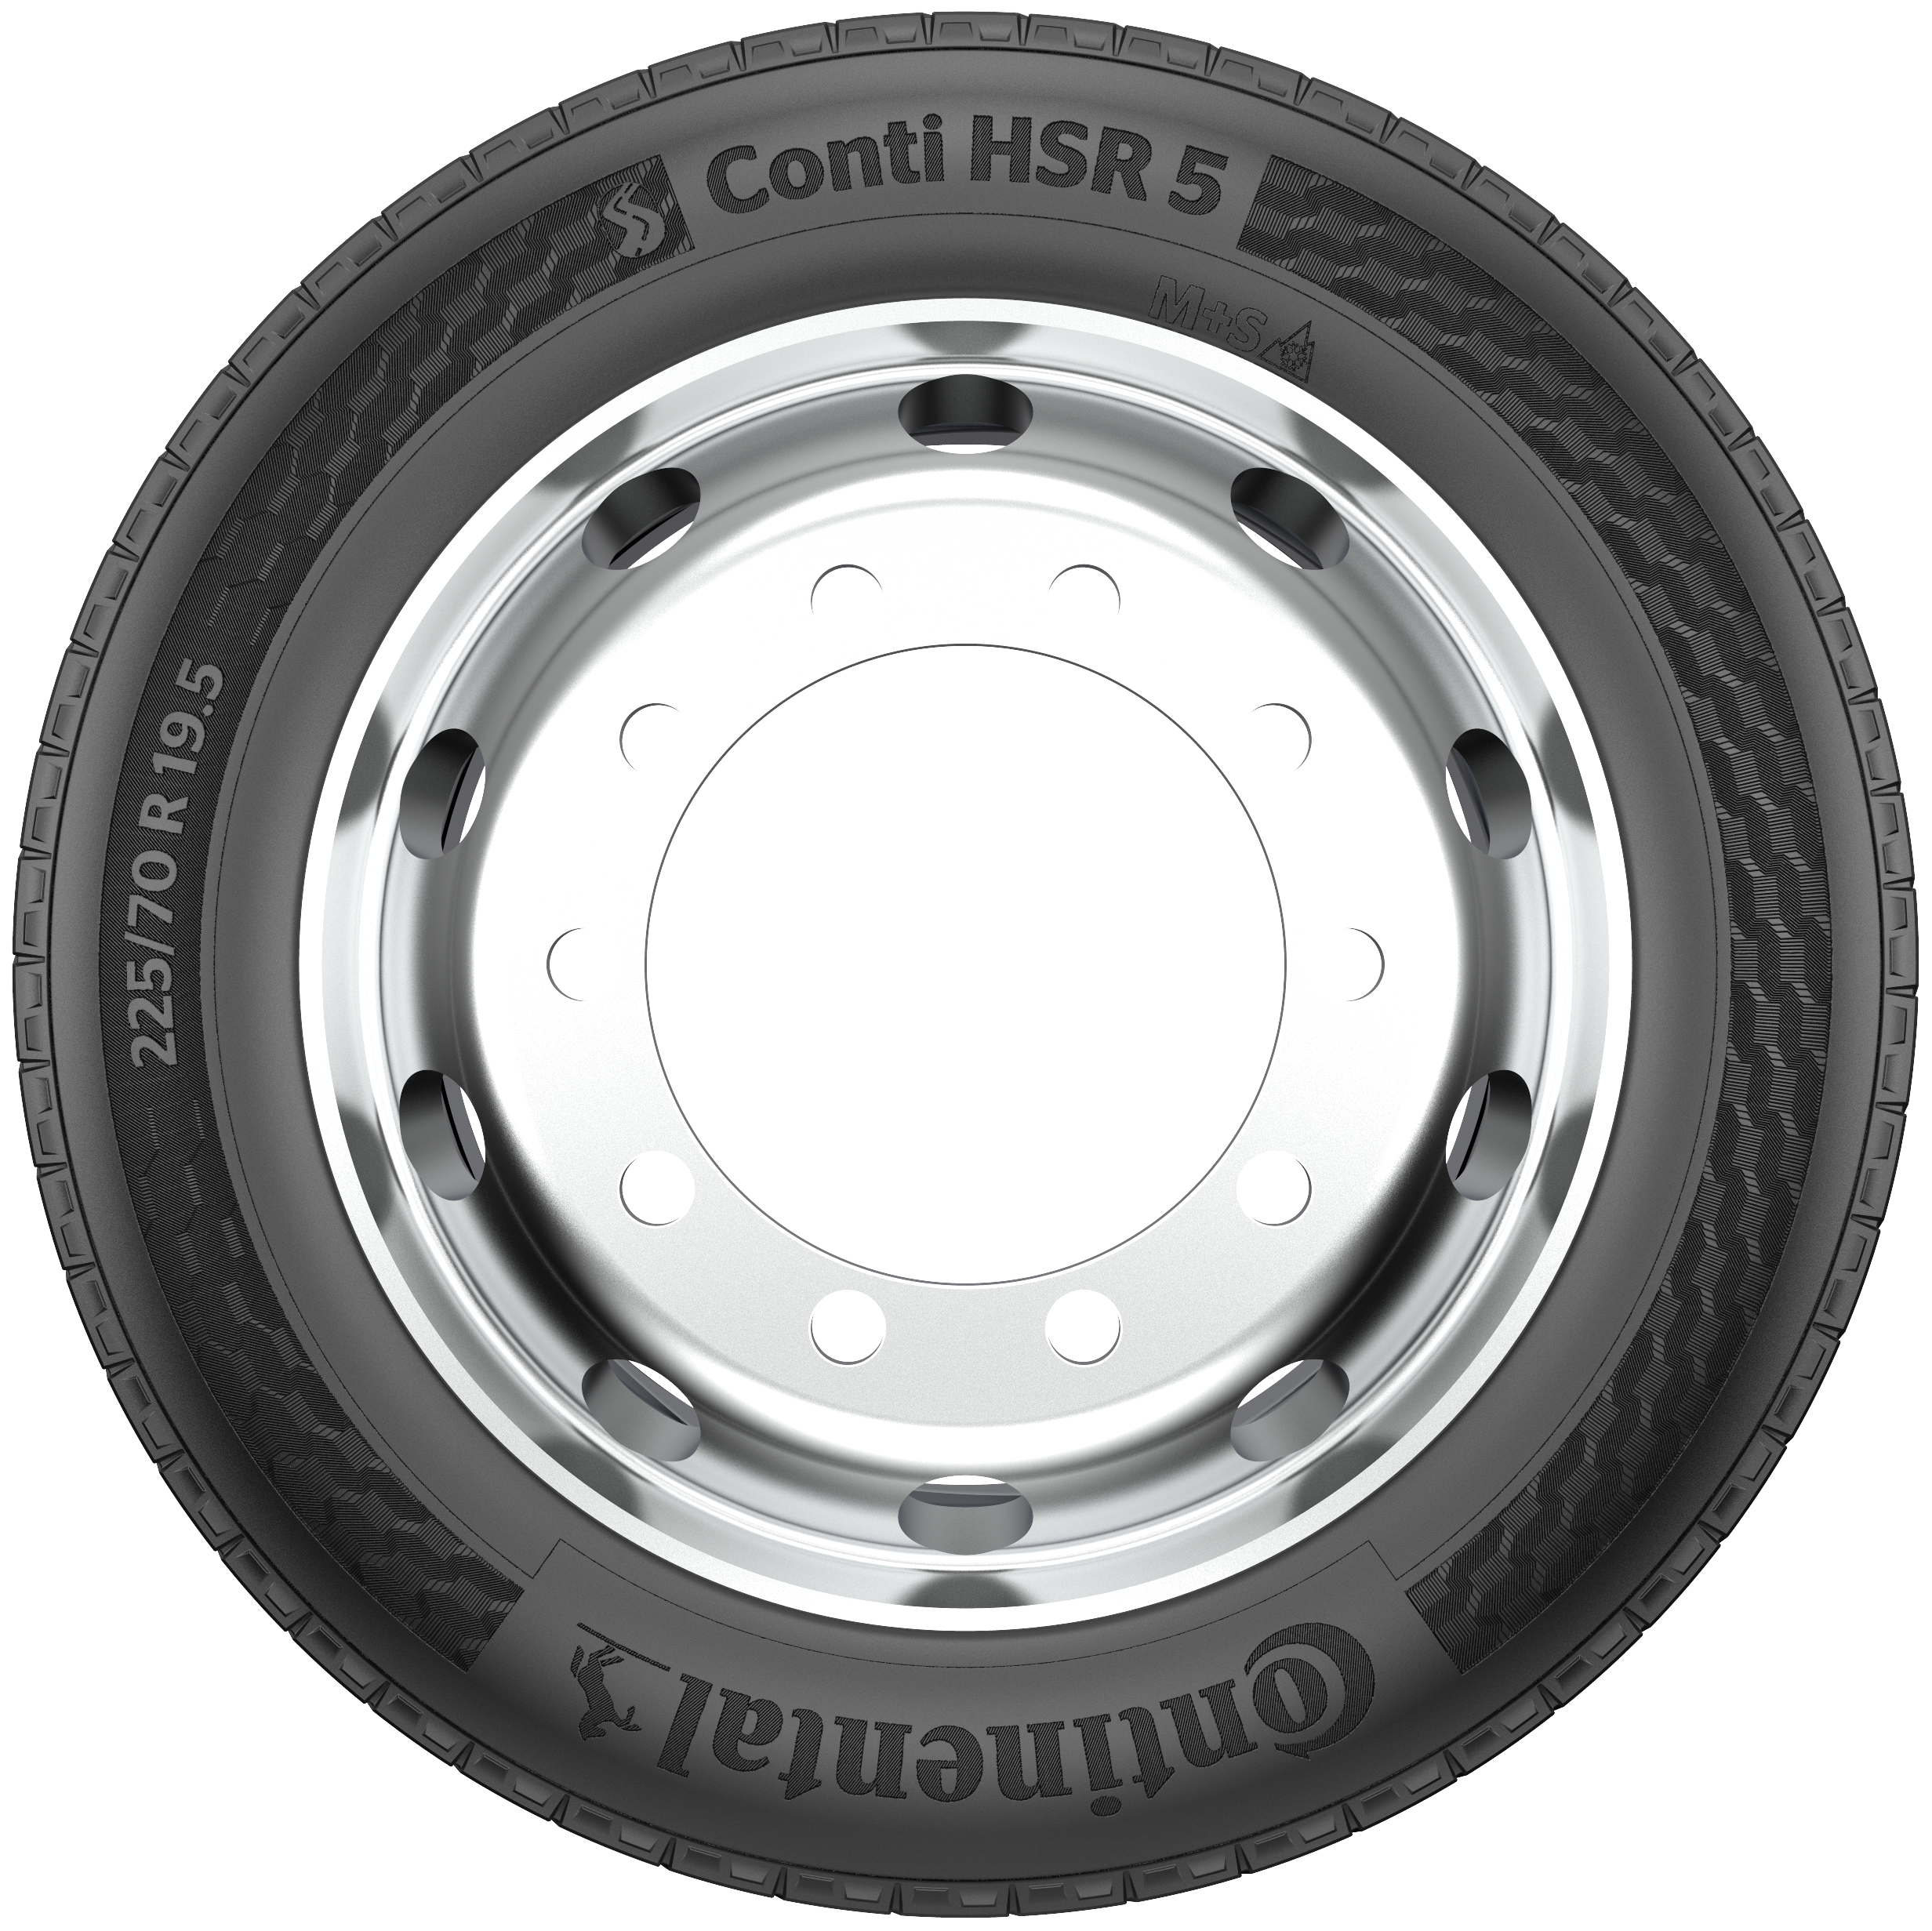 Conti HSR 5 19.5 - Sidewall